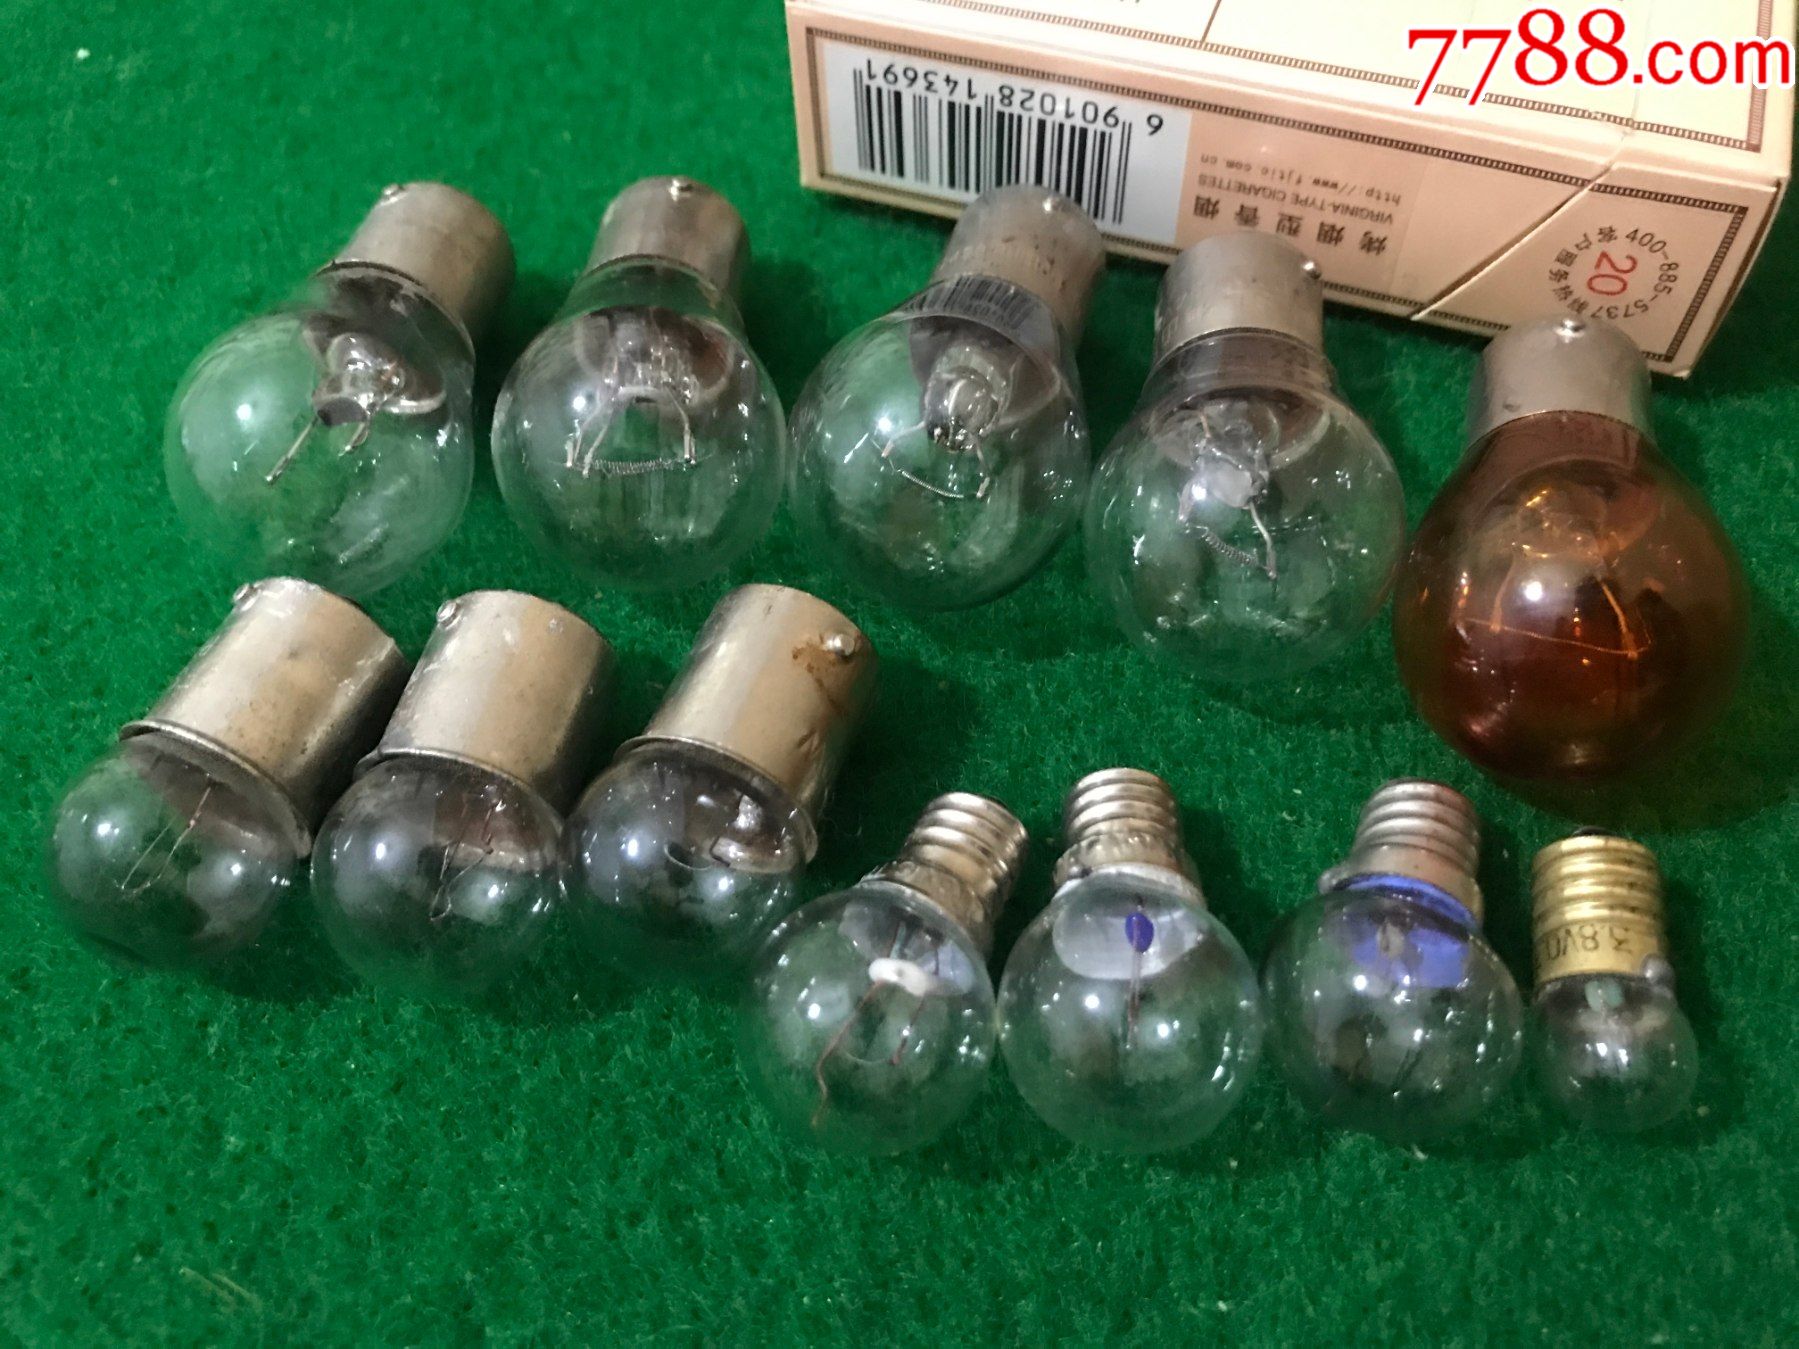 混杂老灯泡12个,其他灯具,灯具配件,八十年代(20世纪),玻璃/琉璃,照明